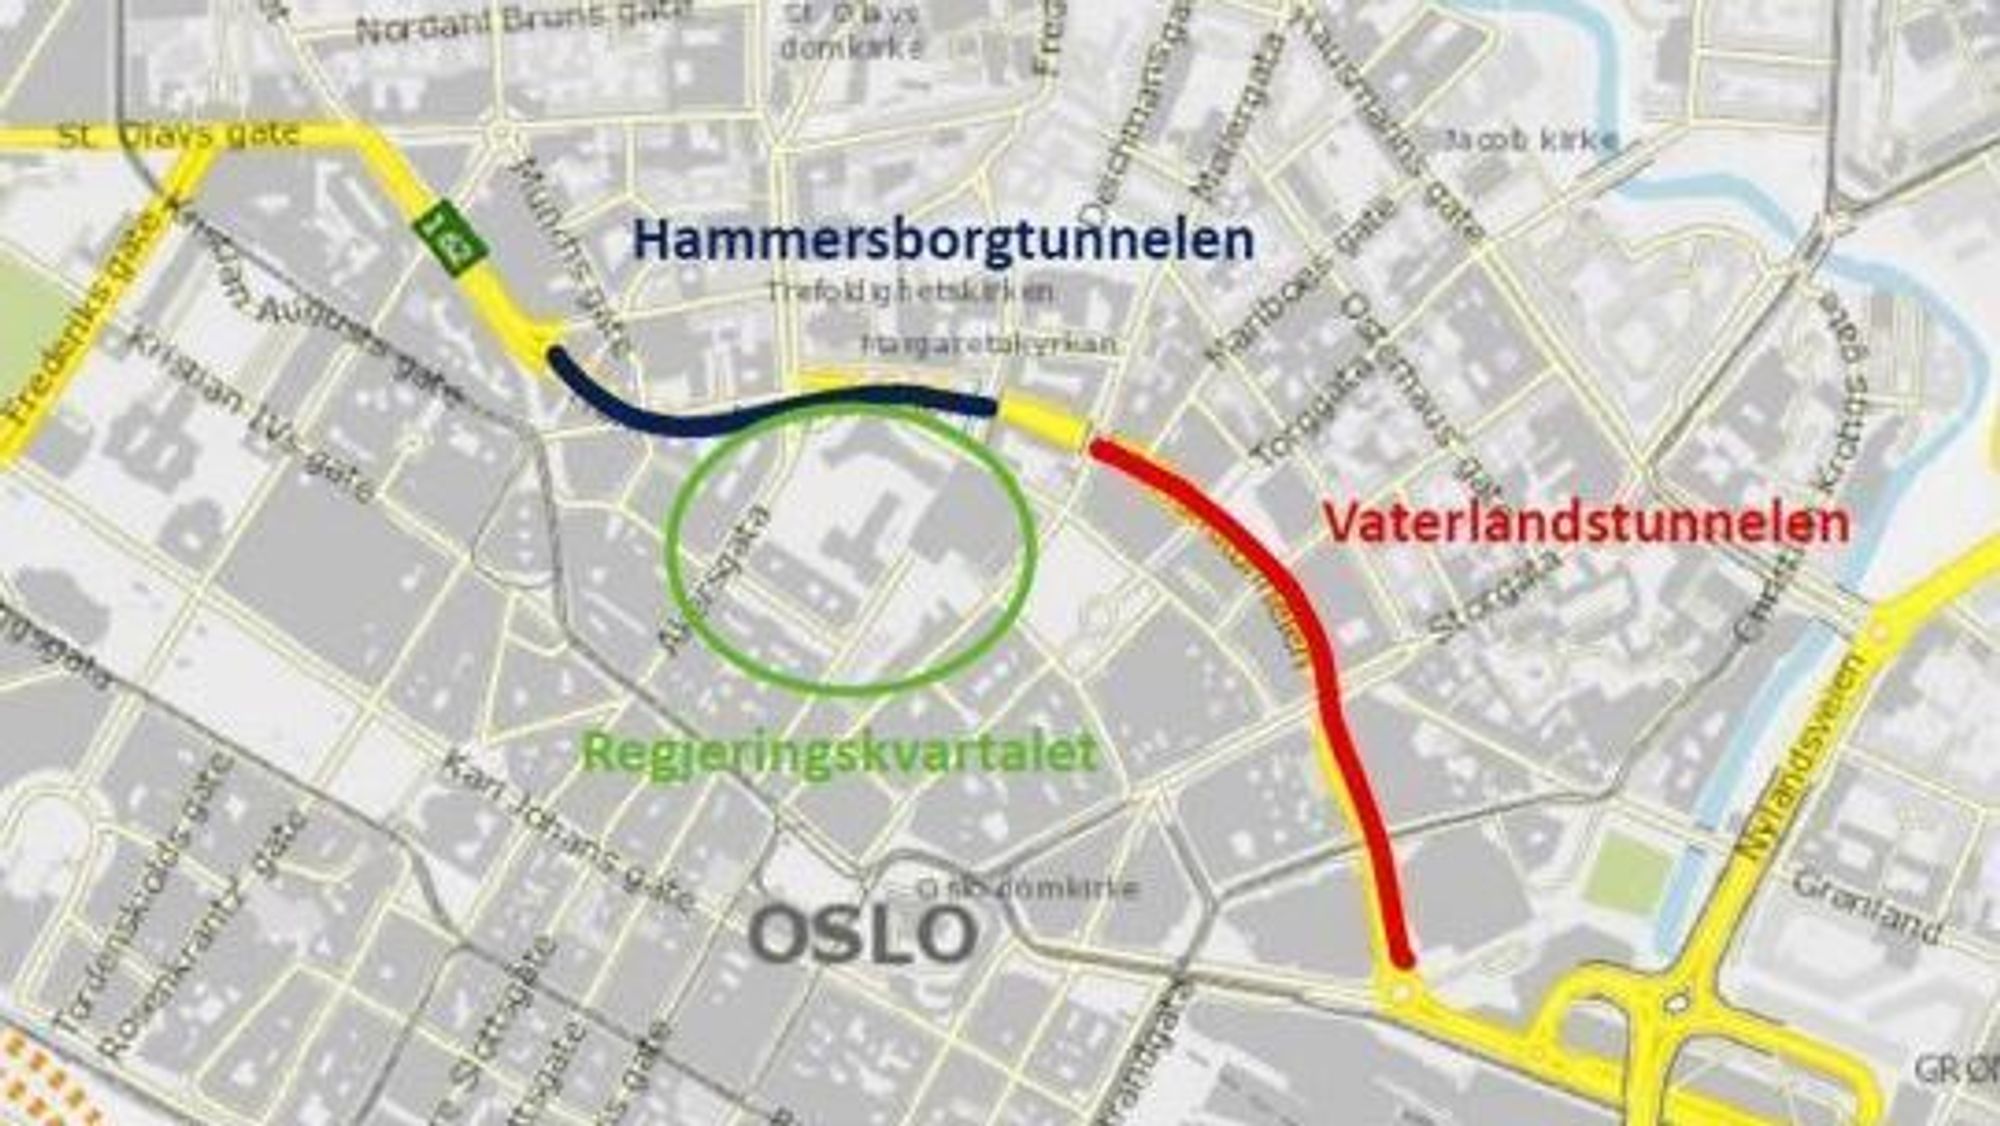 Hammersborgtunnelen skal bygges om, og Vaterlandtunnelen skal rehabiliteres.